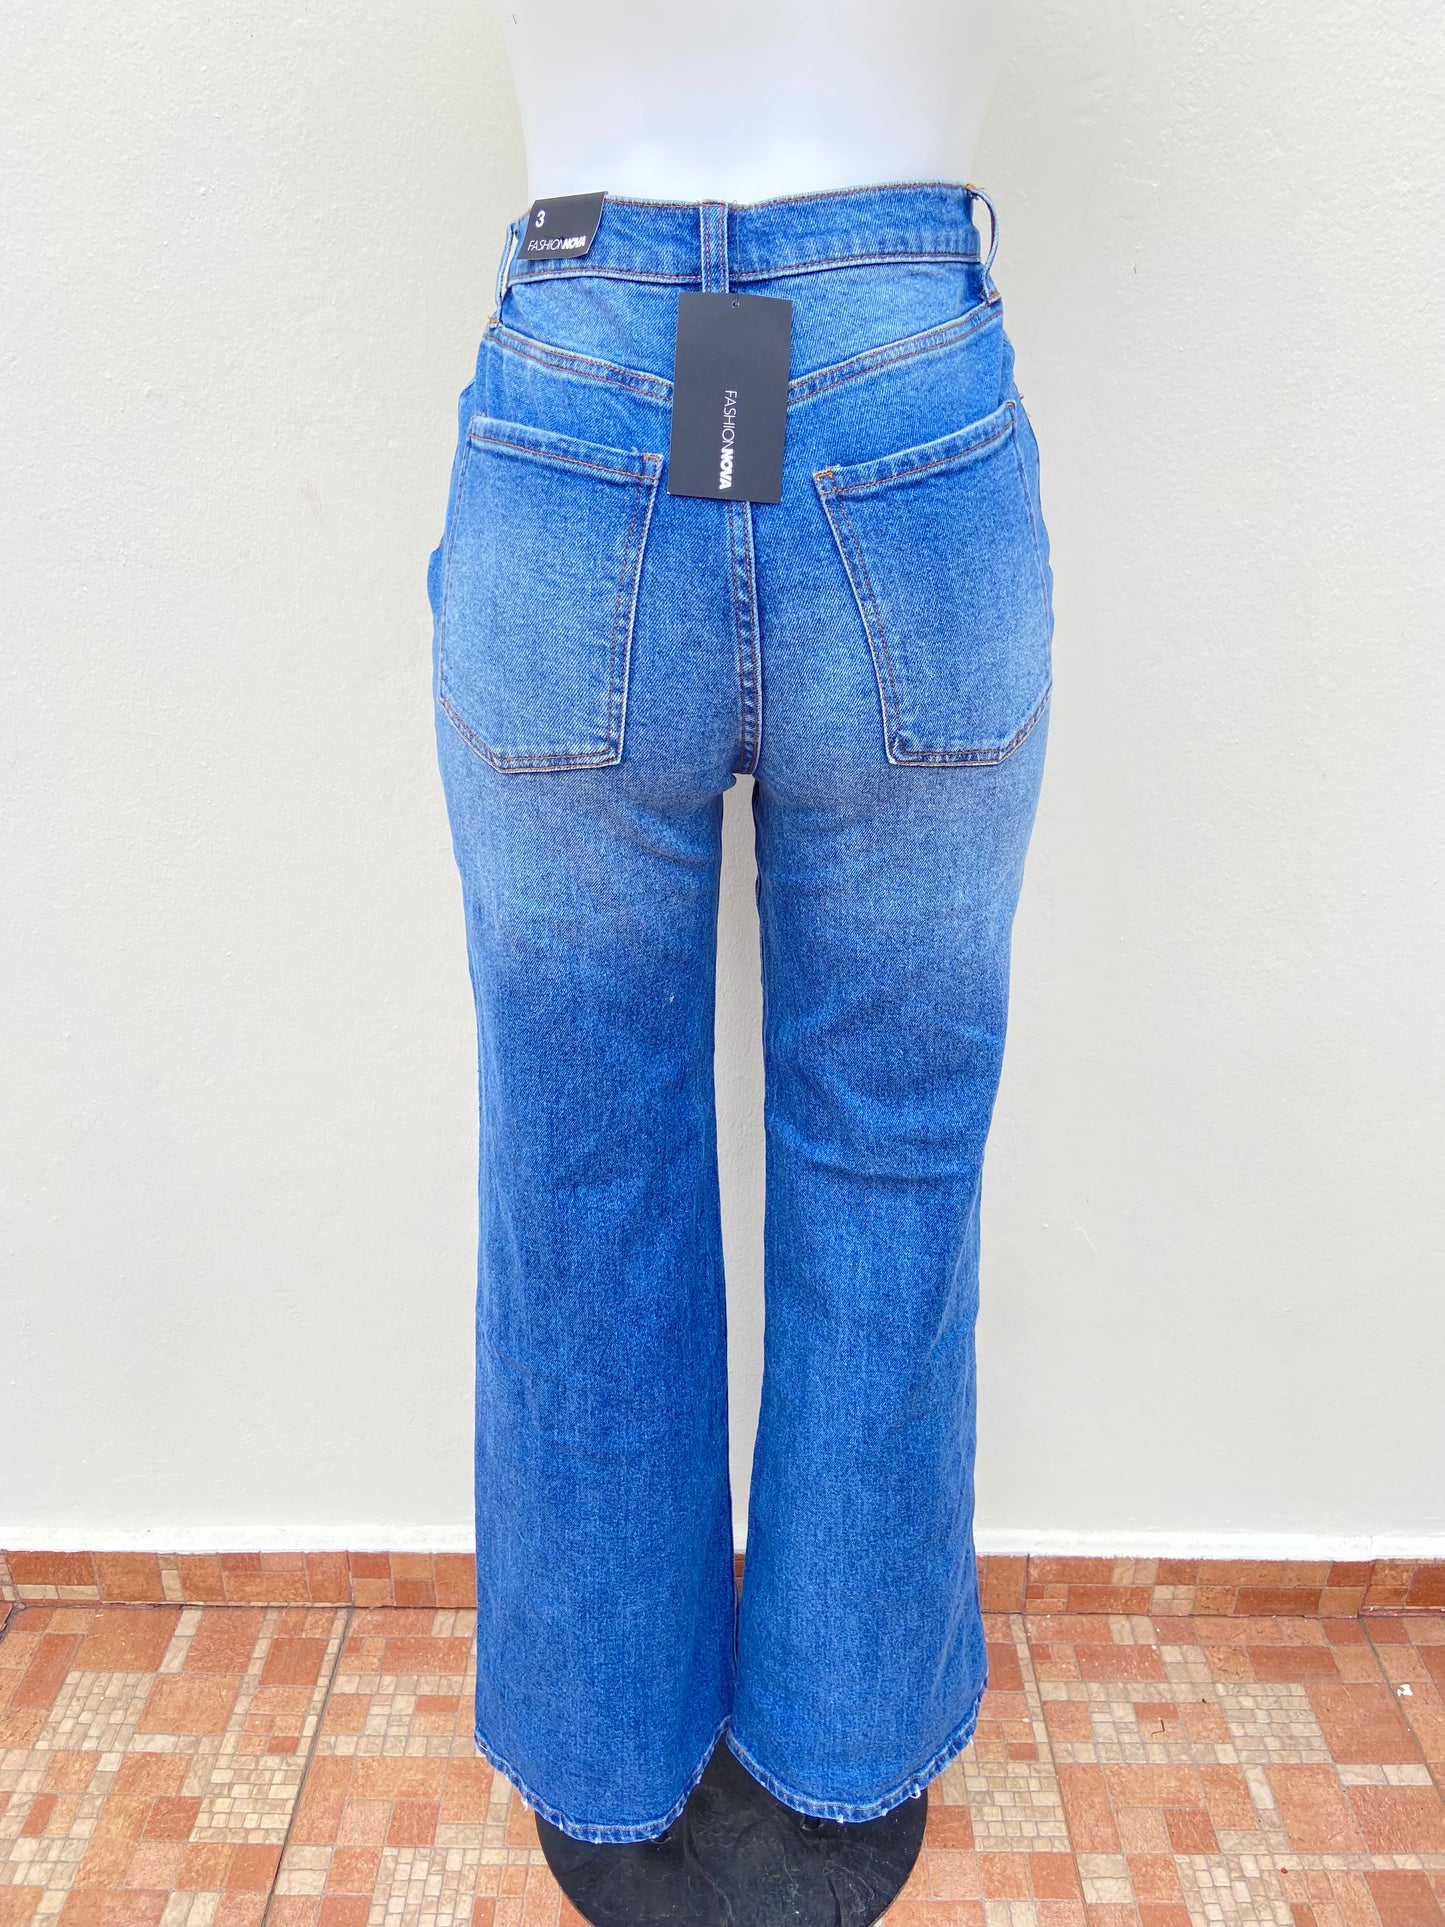 Pantalón Jean FASHION NOVA original azul con rasgados, OH SO 90’s estilo mom.